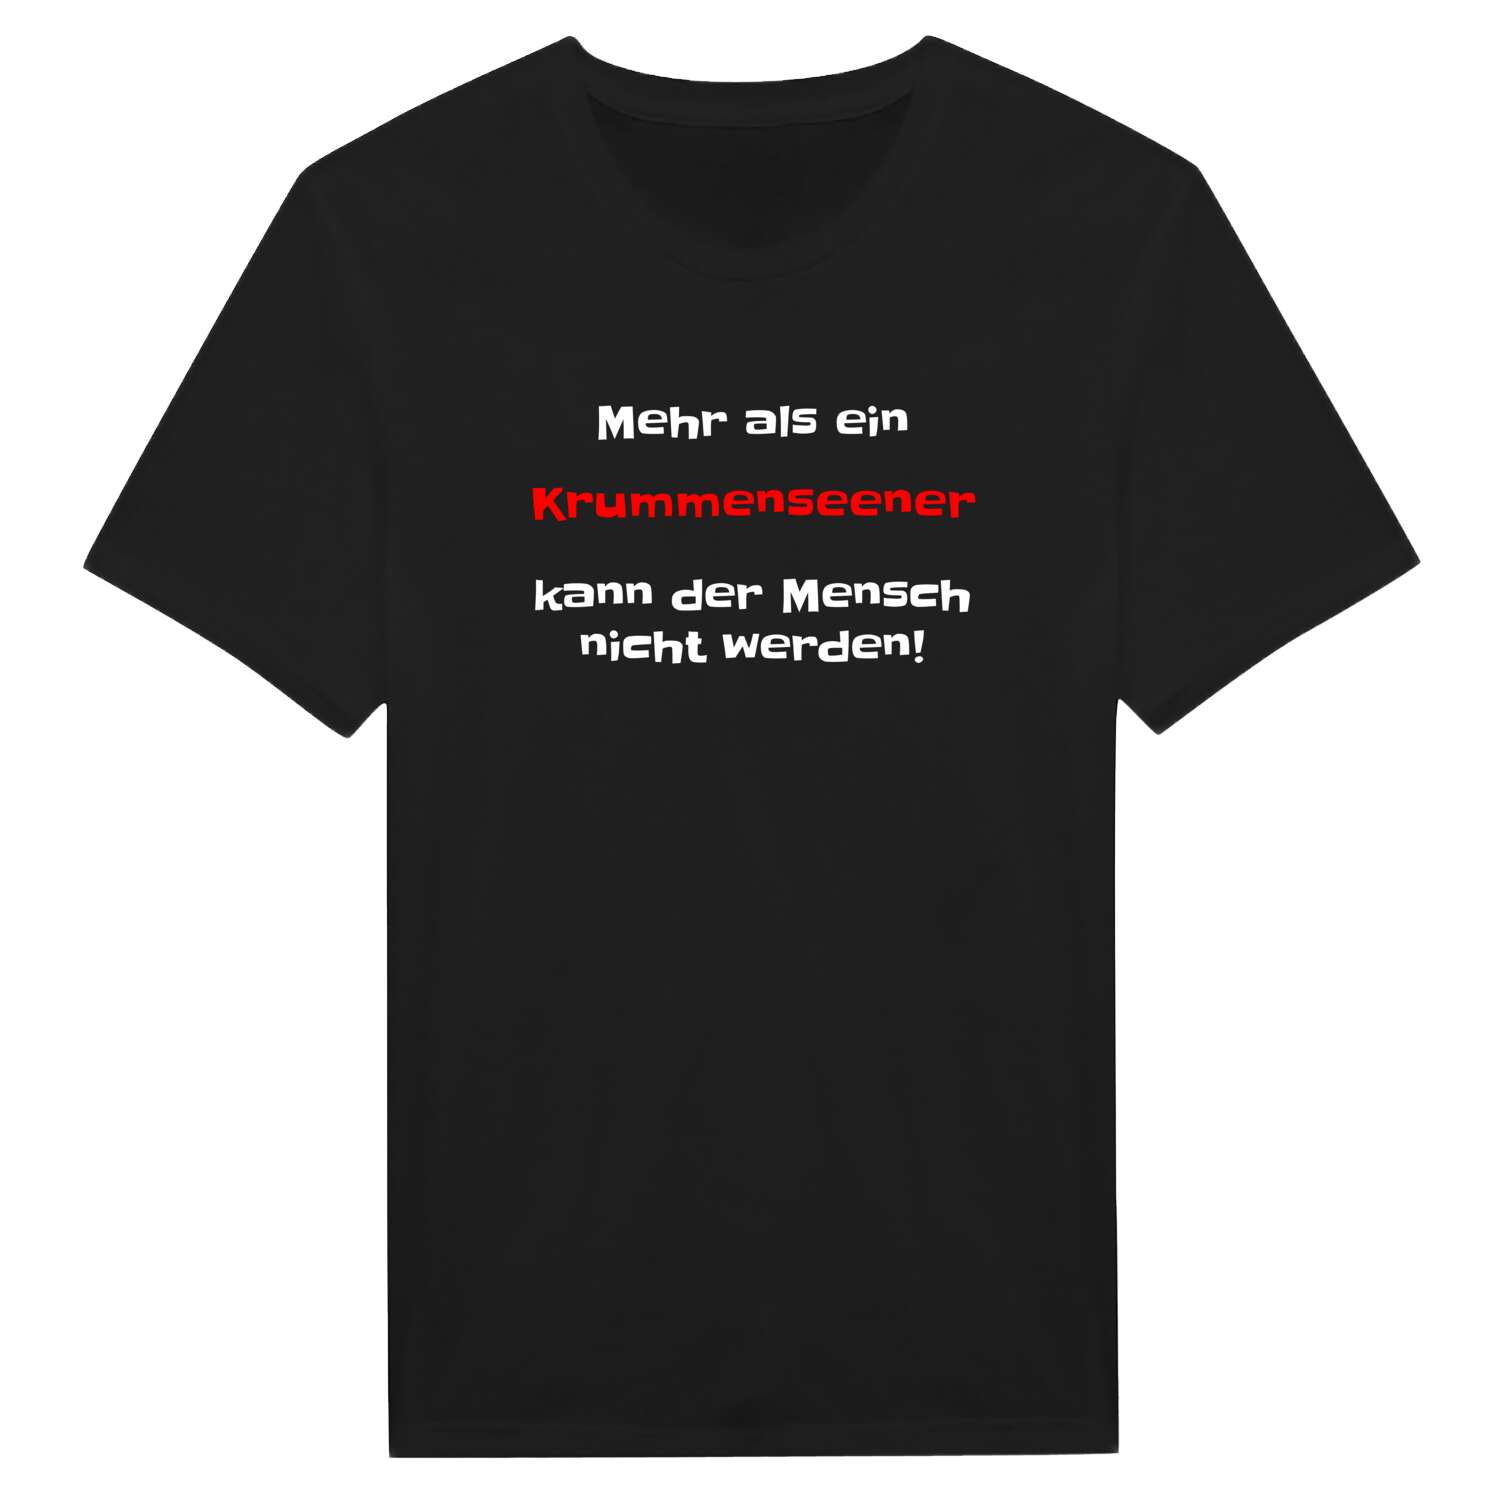 Krummensee T-Shirt »Mehr als ein«